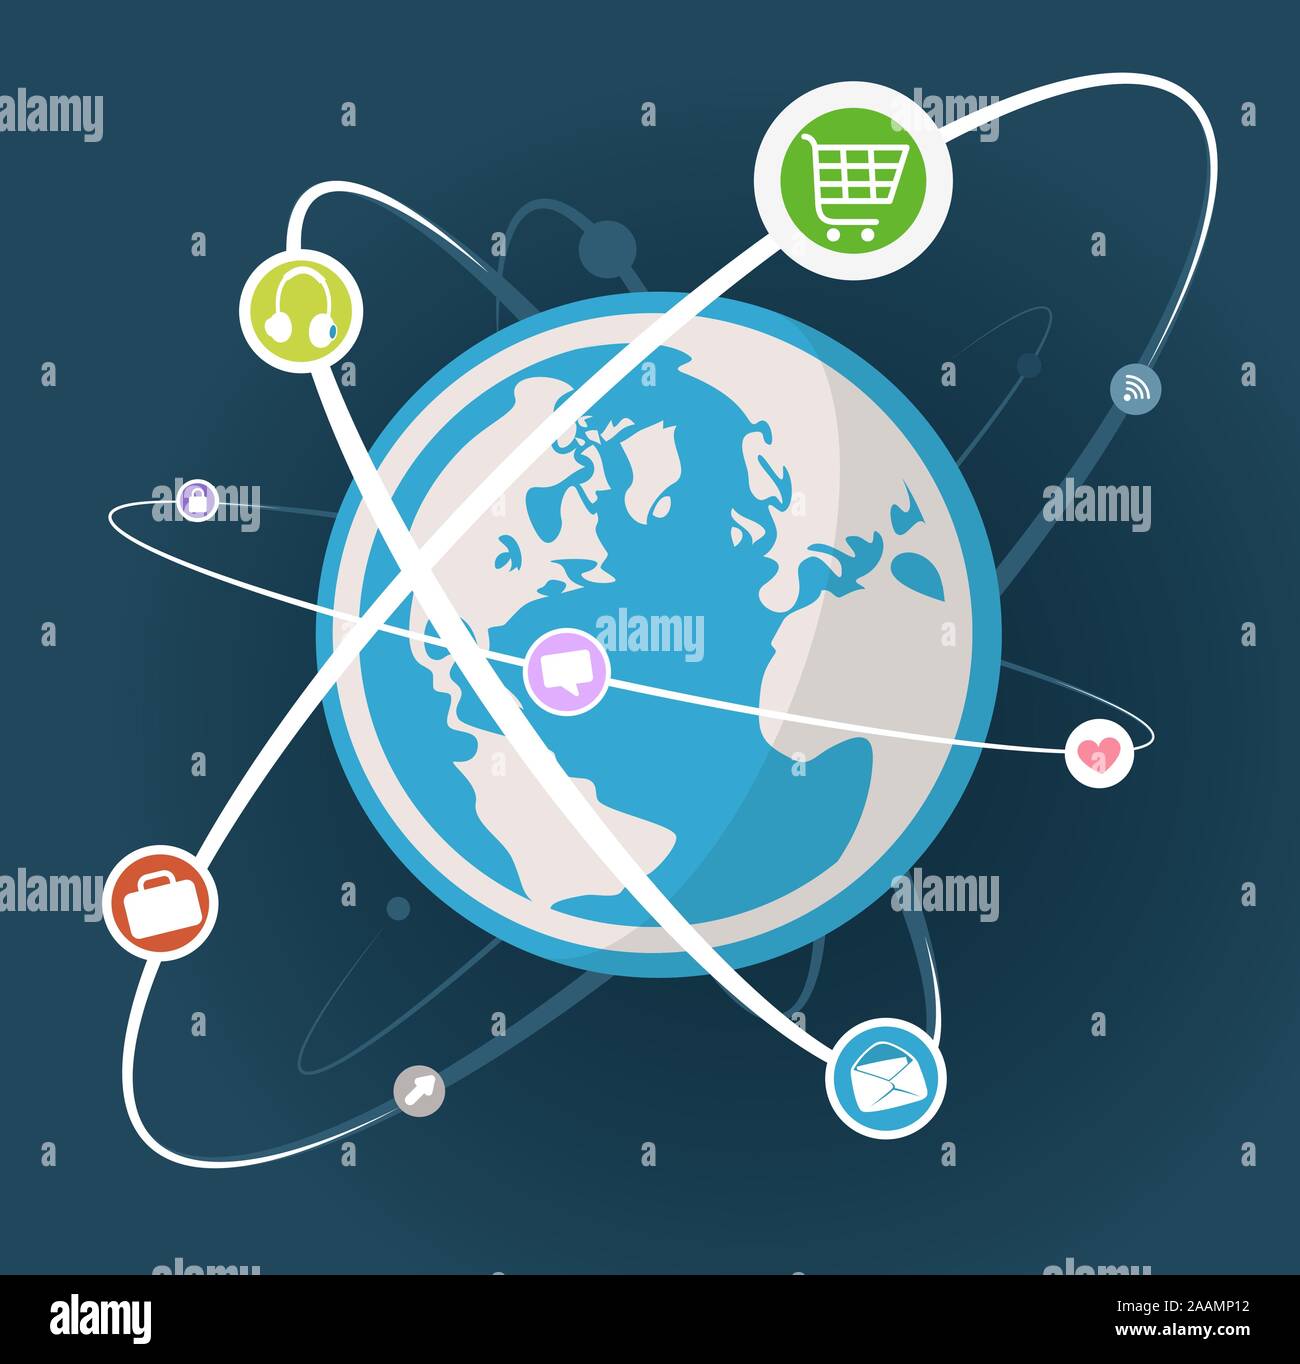 Welt mit Orbit Symbol mit Einkaufswagen, Kopfhörer, Herz, Umschlag, Koffer, Dialog-Blase und Pfeil. Vektor-Illustration-Cartoon. Stock Vektor